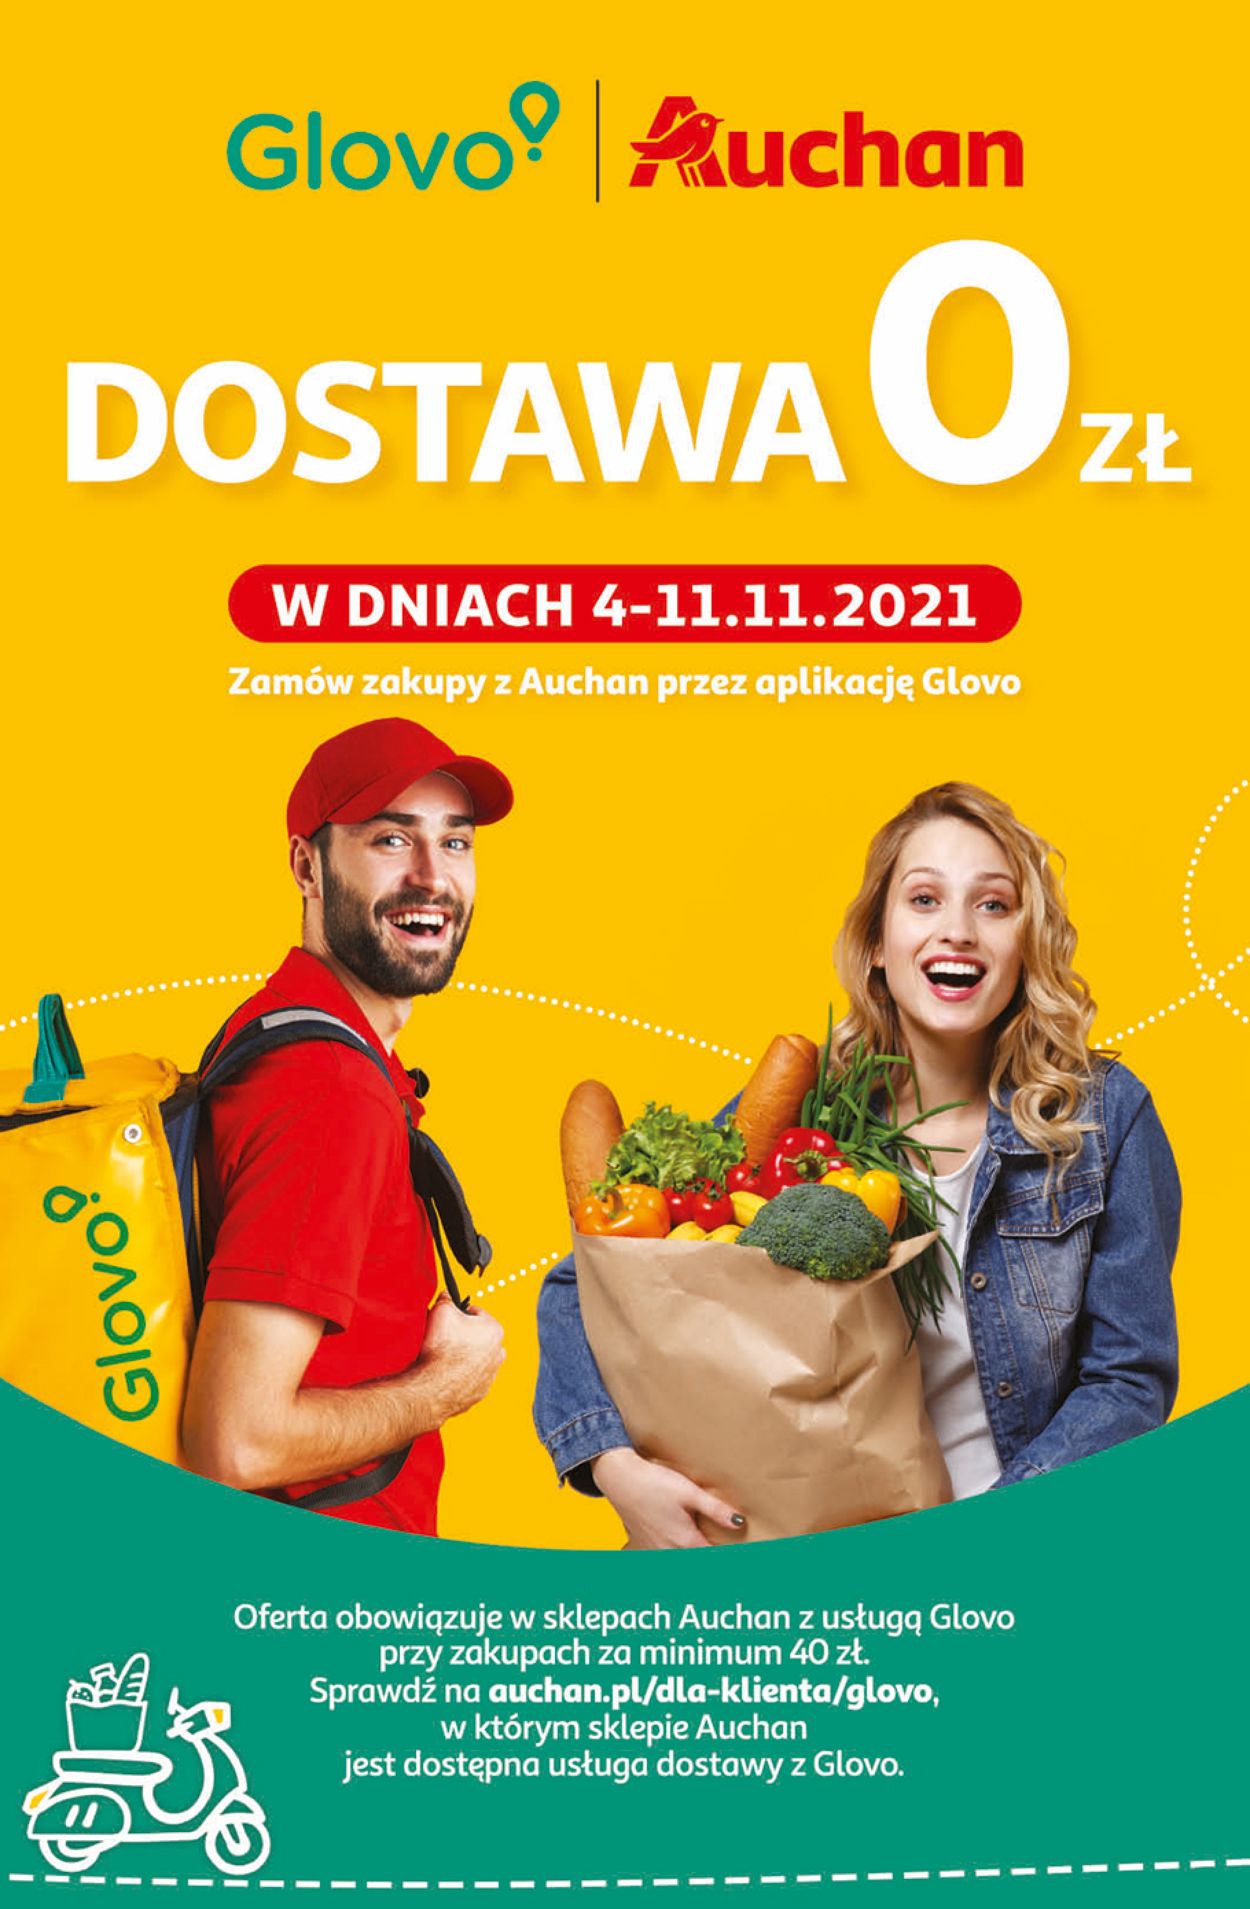 Auchan Gazetka od 04.11.2021